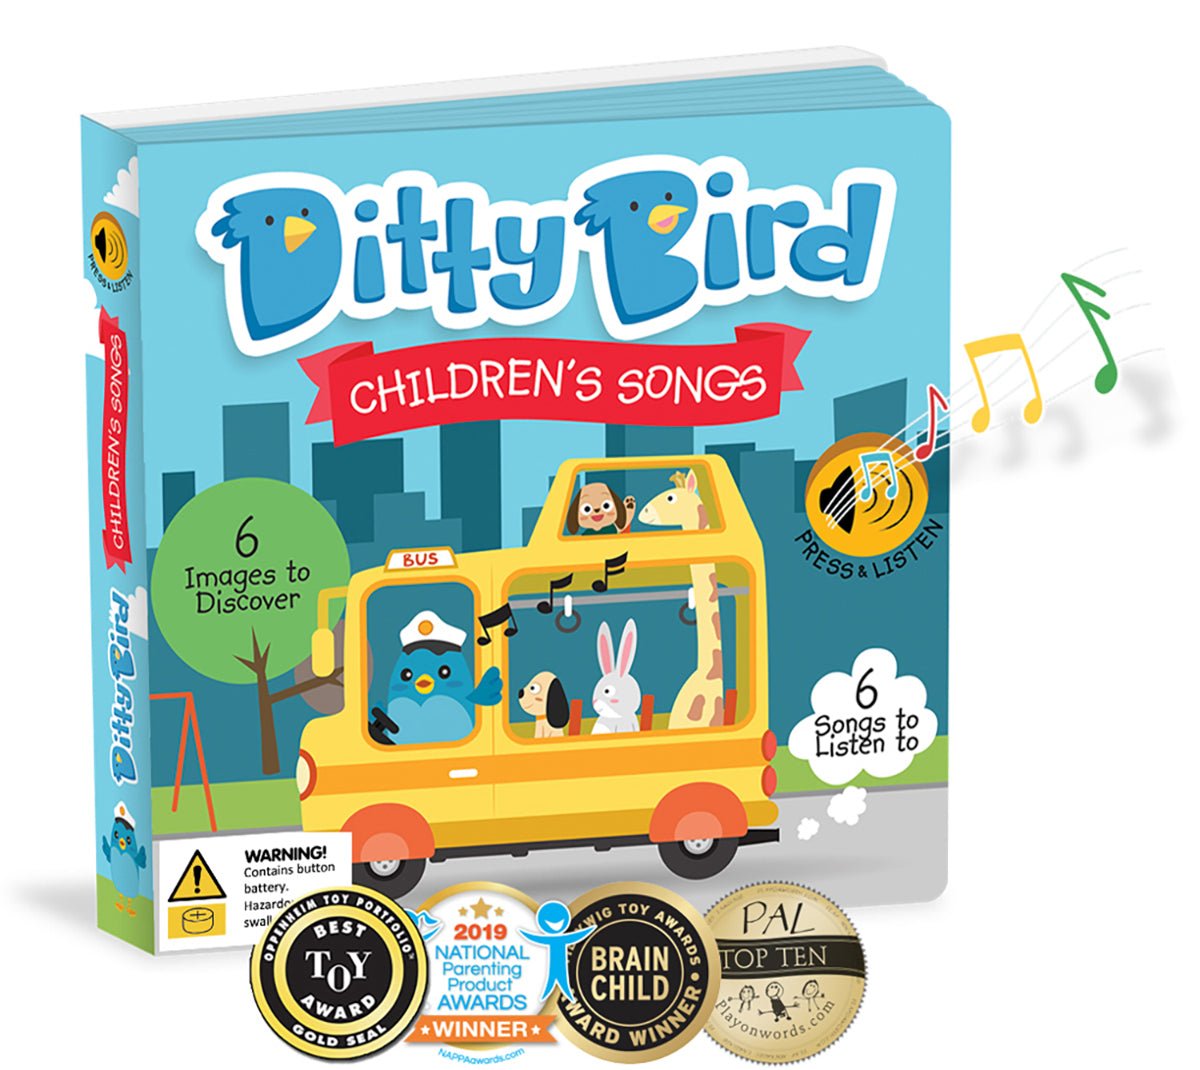 Ditty Bird Children's Songs Book | Ditty Bird